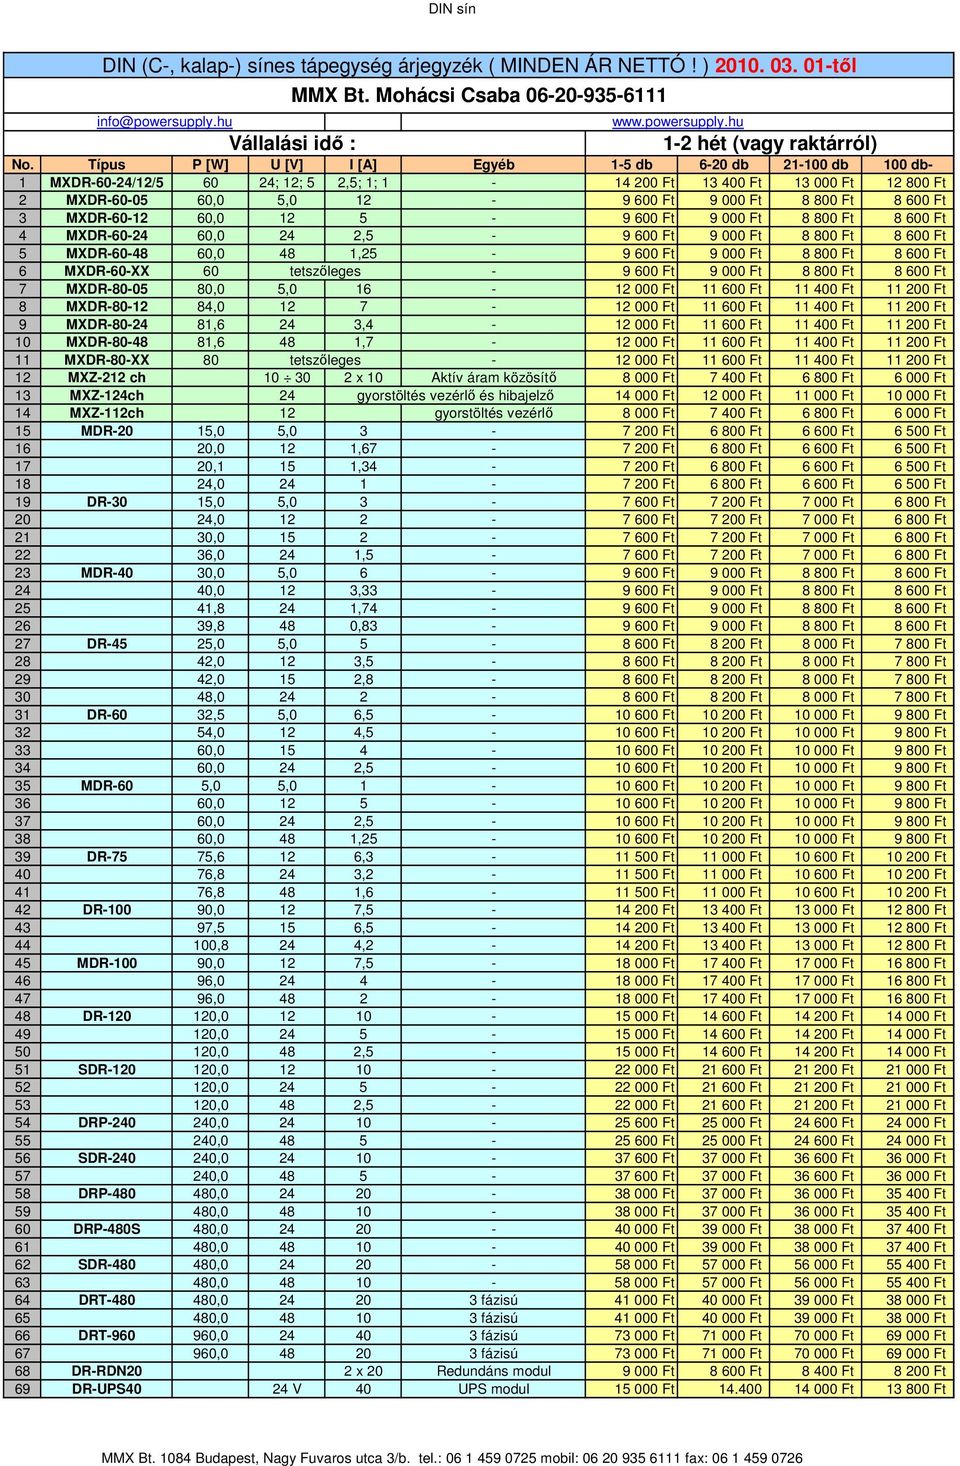 60 tetszőleges - 7 MXDR-80-05 80,0 5,0 16-8 MXDR-80-12 84,0 12 7-9 MXDR-80-24 81,6 24 3,4-10 MXDR-80-48 81,6 48 1,7-11 MXDR-80-XX 80 tetszőleges - 12 MXZ-212 ch 10 30 2 x 10 Aktív áram közösítő 8 000